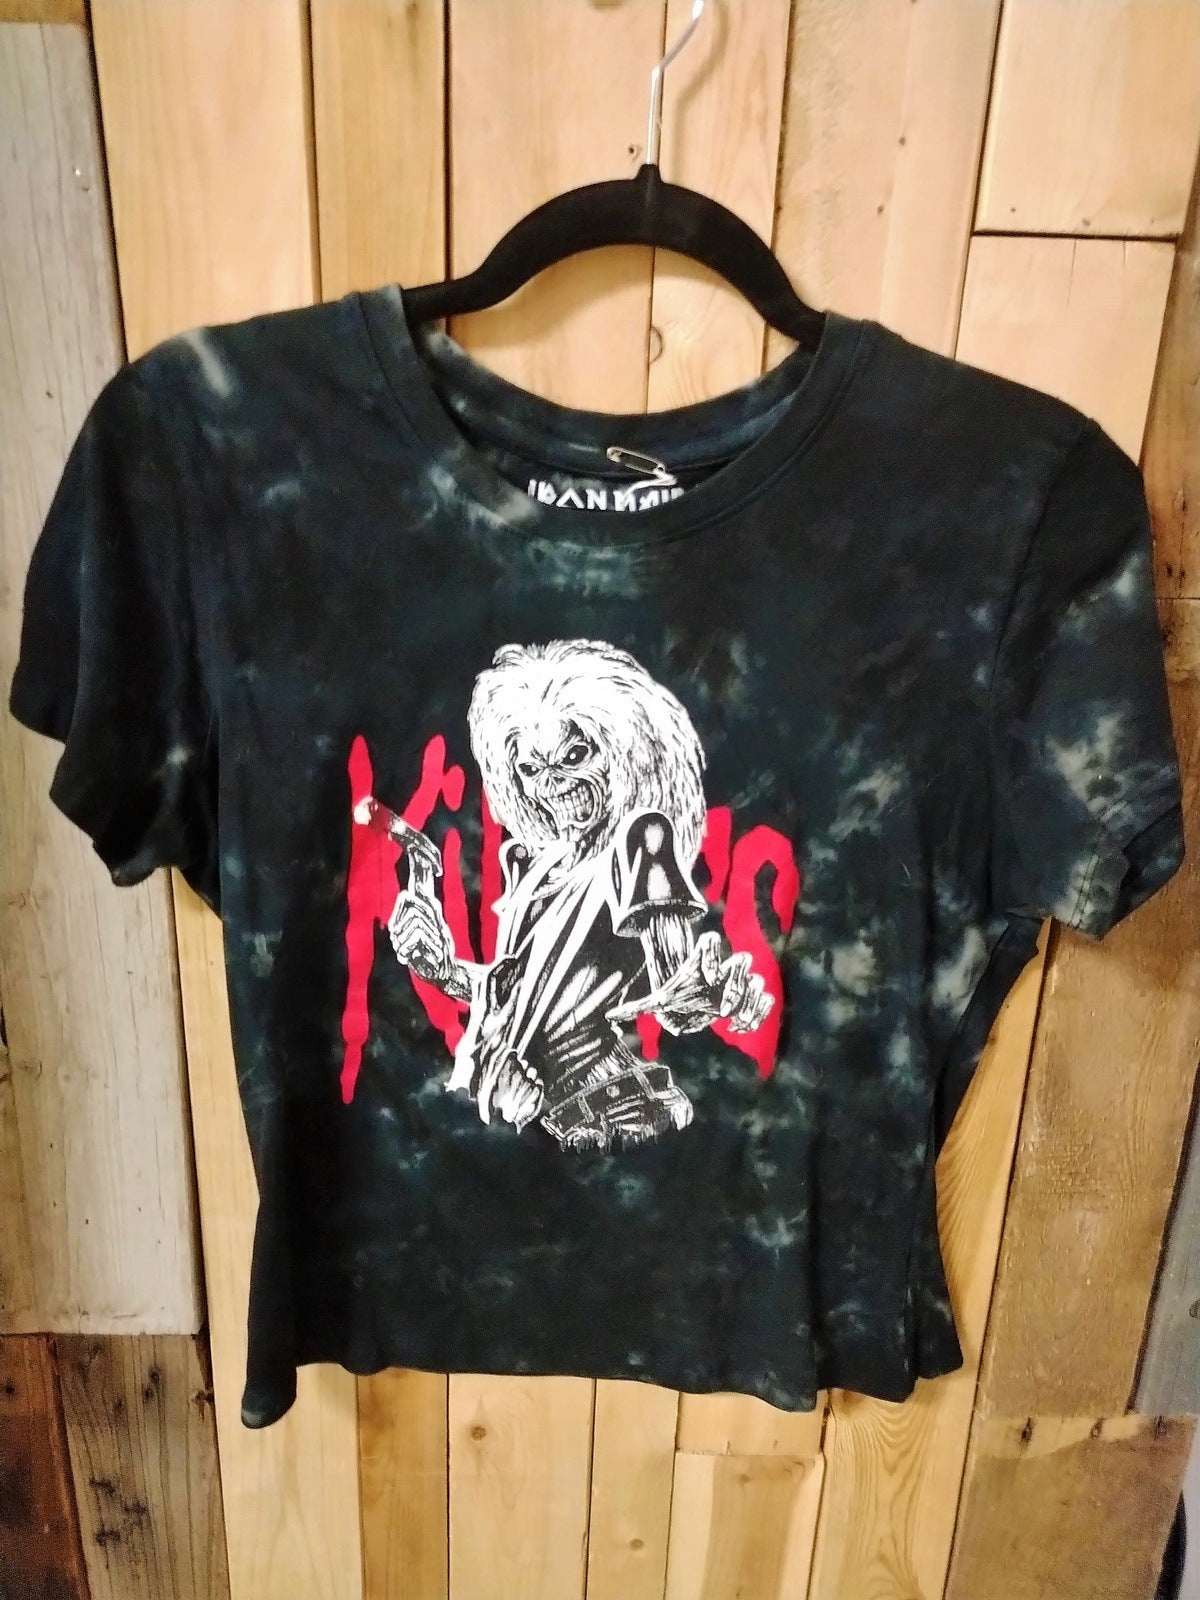 Iron Maiden "Killers" Women's Large Tee Shirt